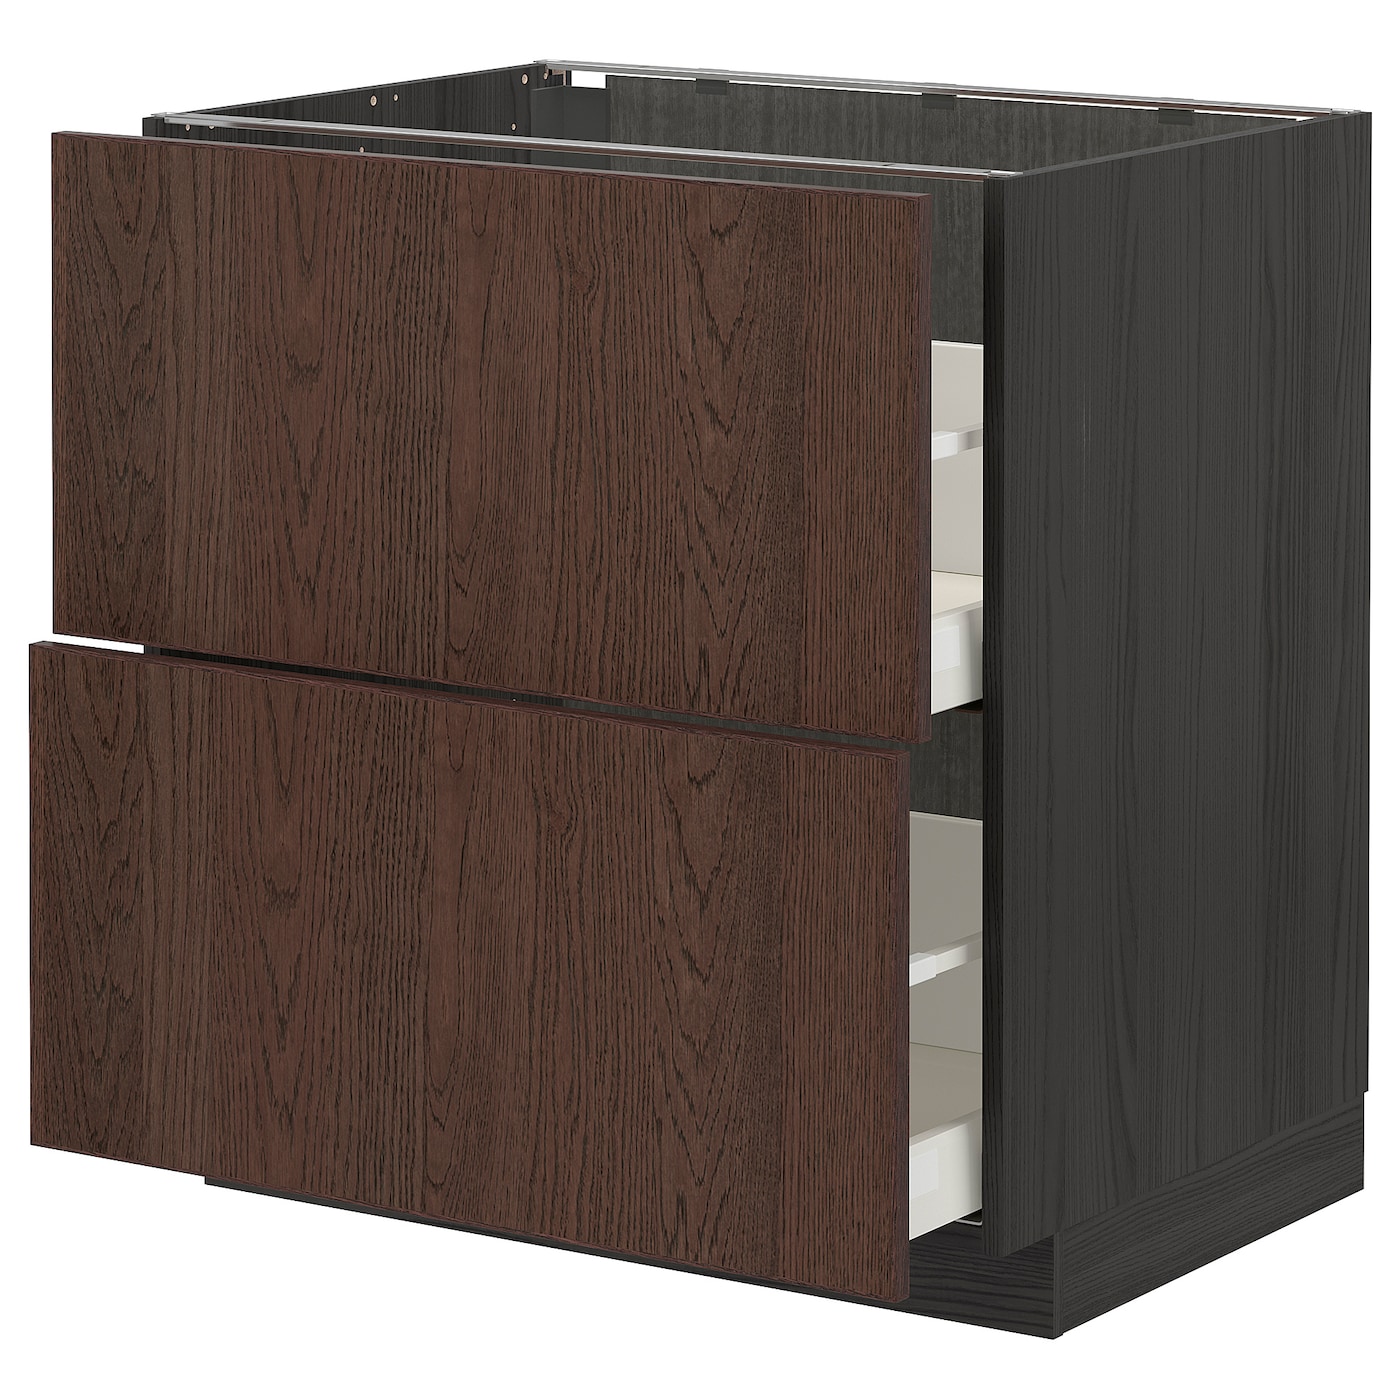 Напольный шкаф  - IKEA METOD MAXIMERA, 88x61,6x80см, черный/коричневый, МЕТОД МАКСИМЕРА ИКЕА